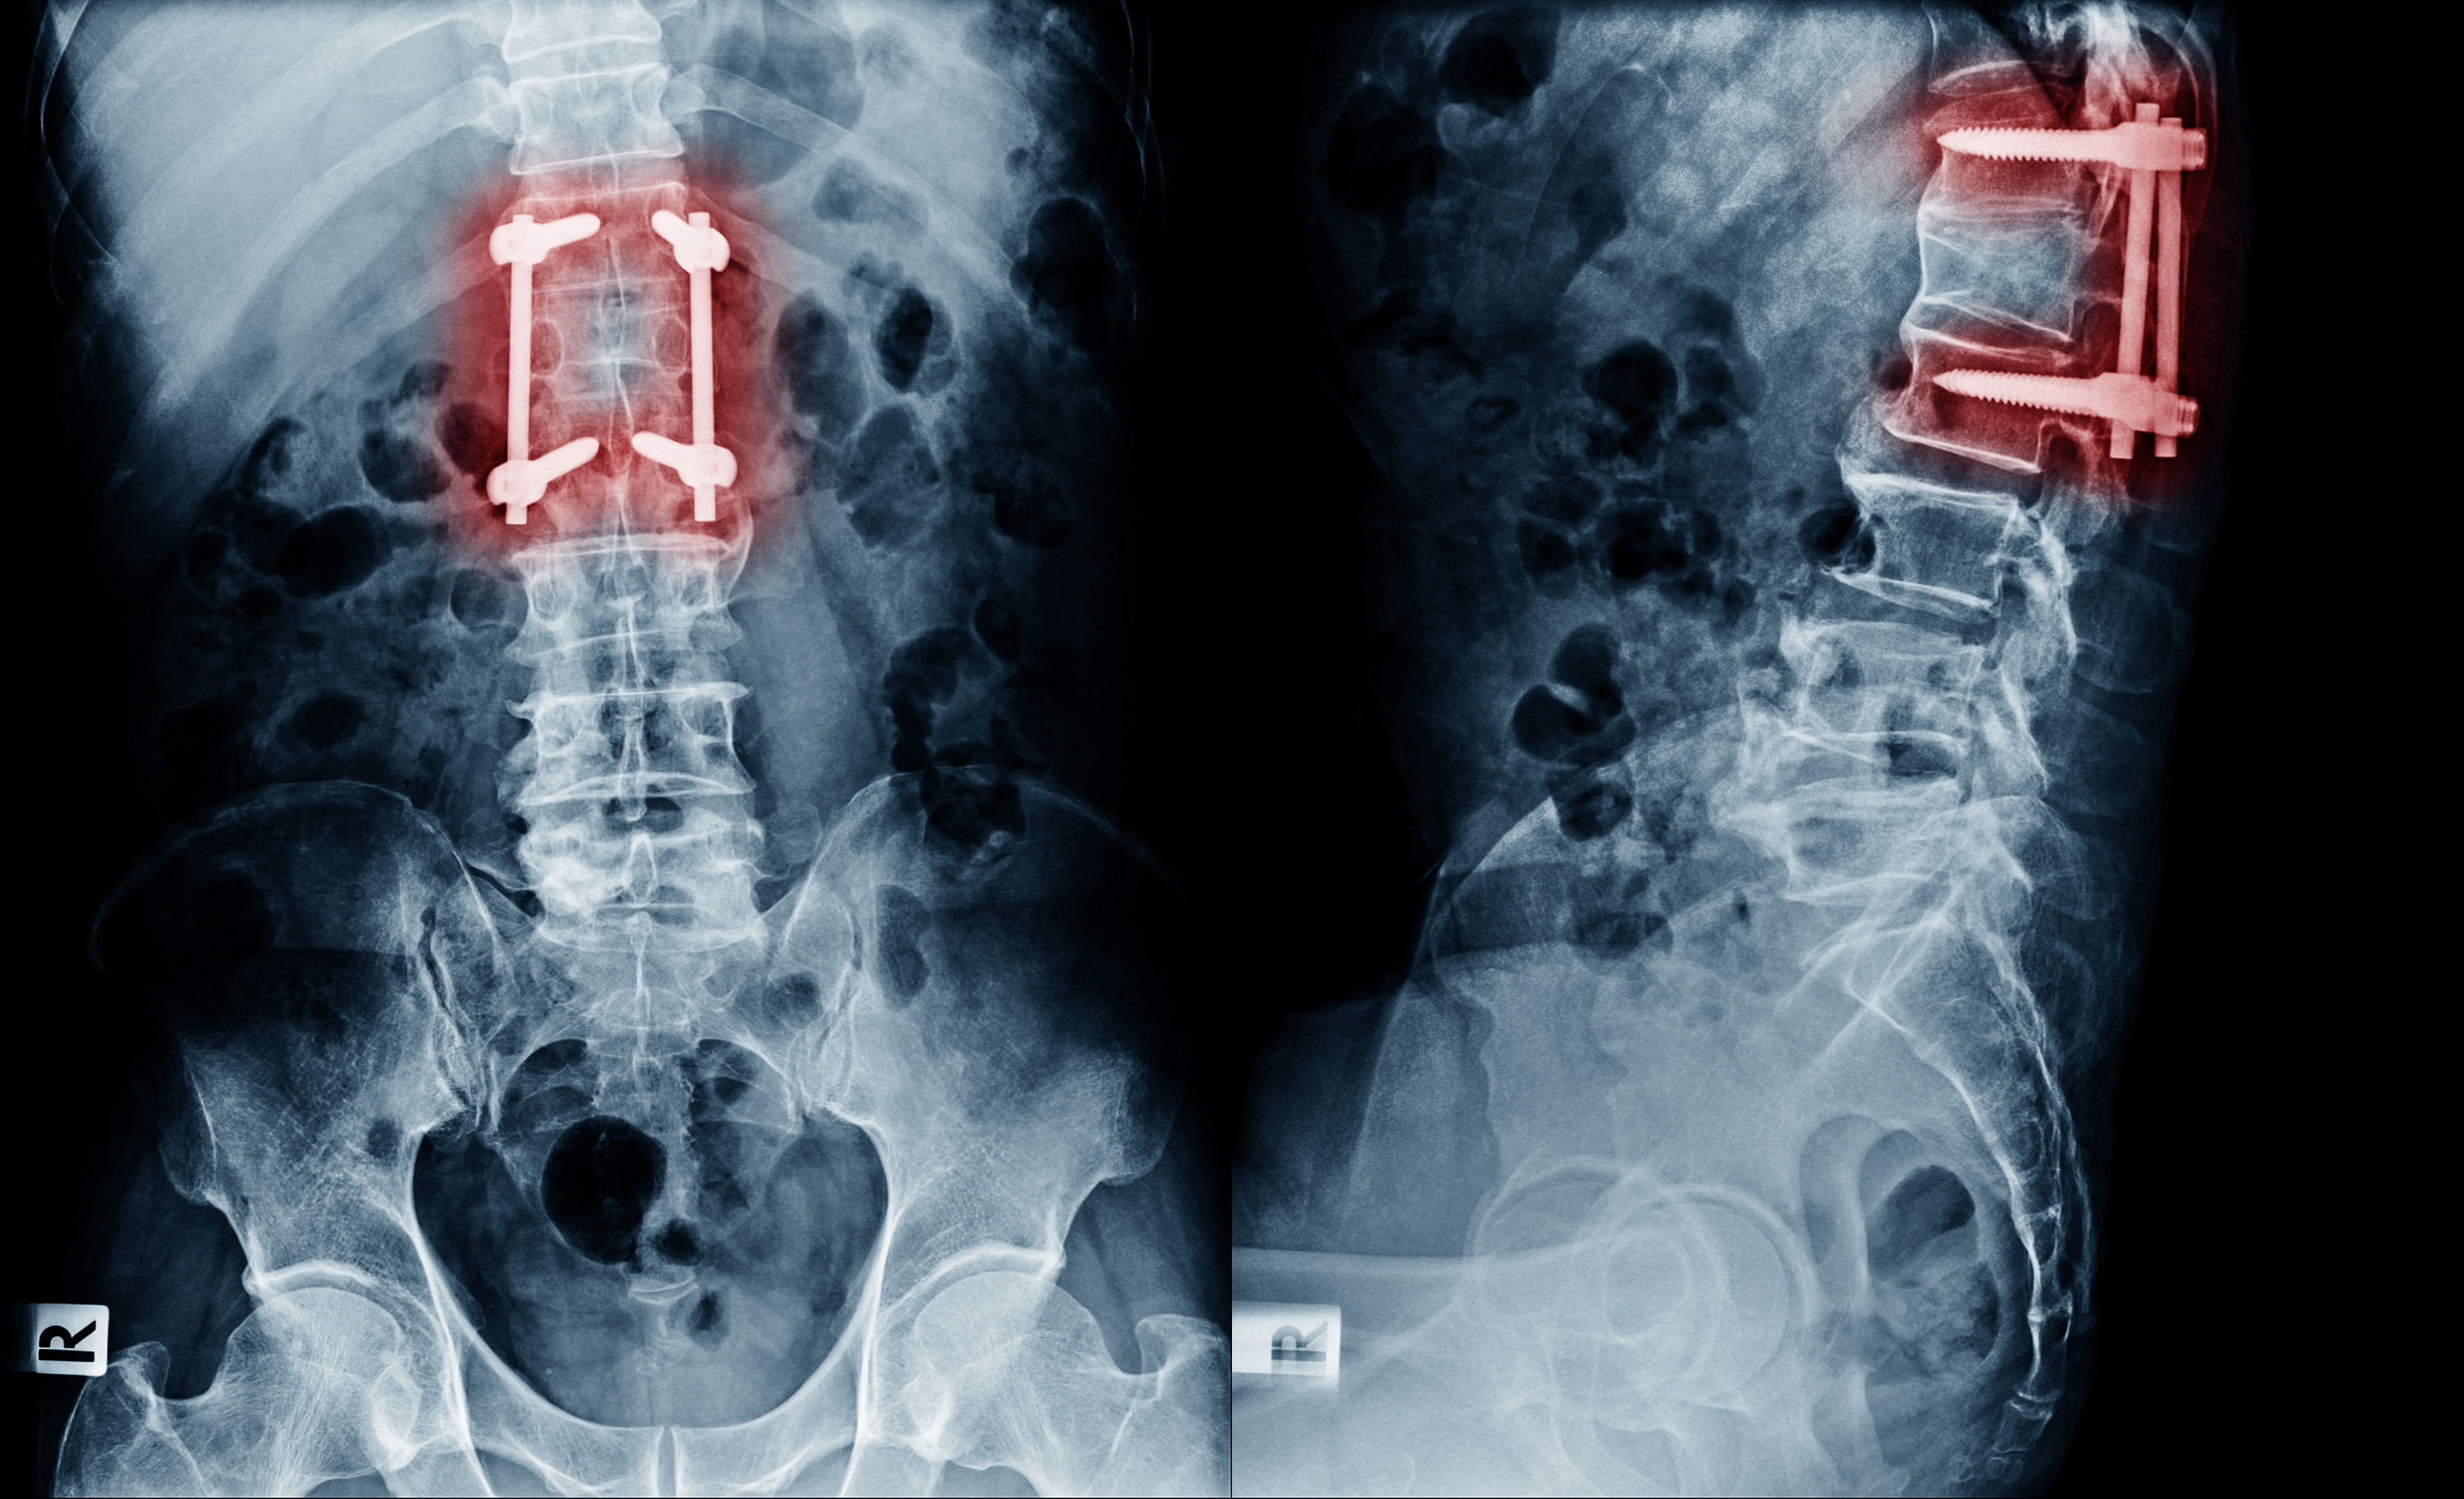 lumbar vertebrae x ray